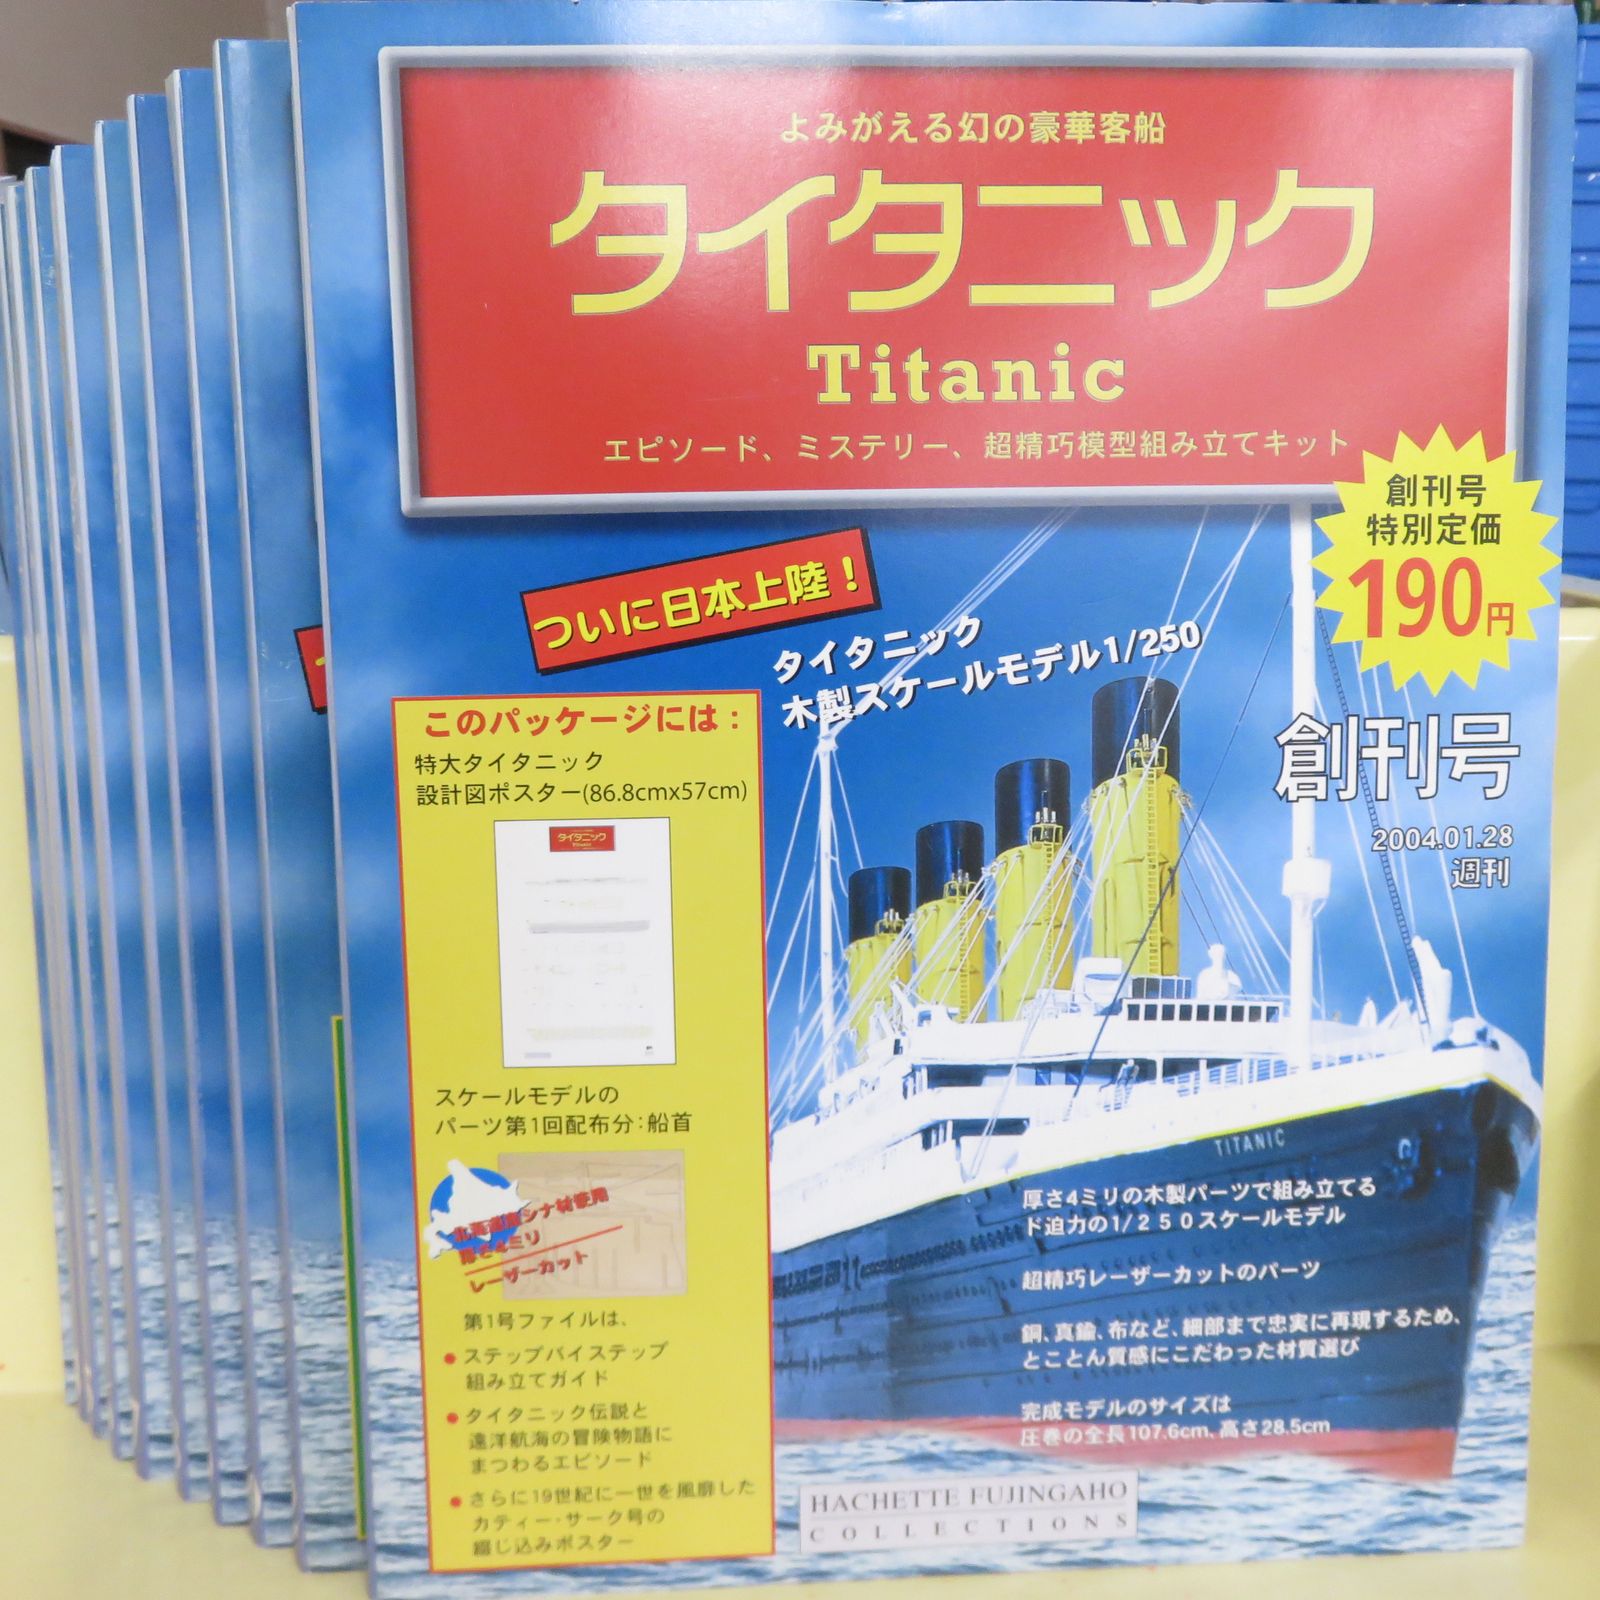 週刊タイタニック Titanic 全1~100号 よみがえる幻の豪華客船 超精巧